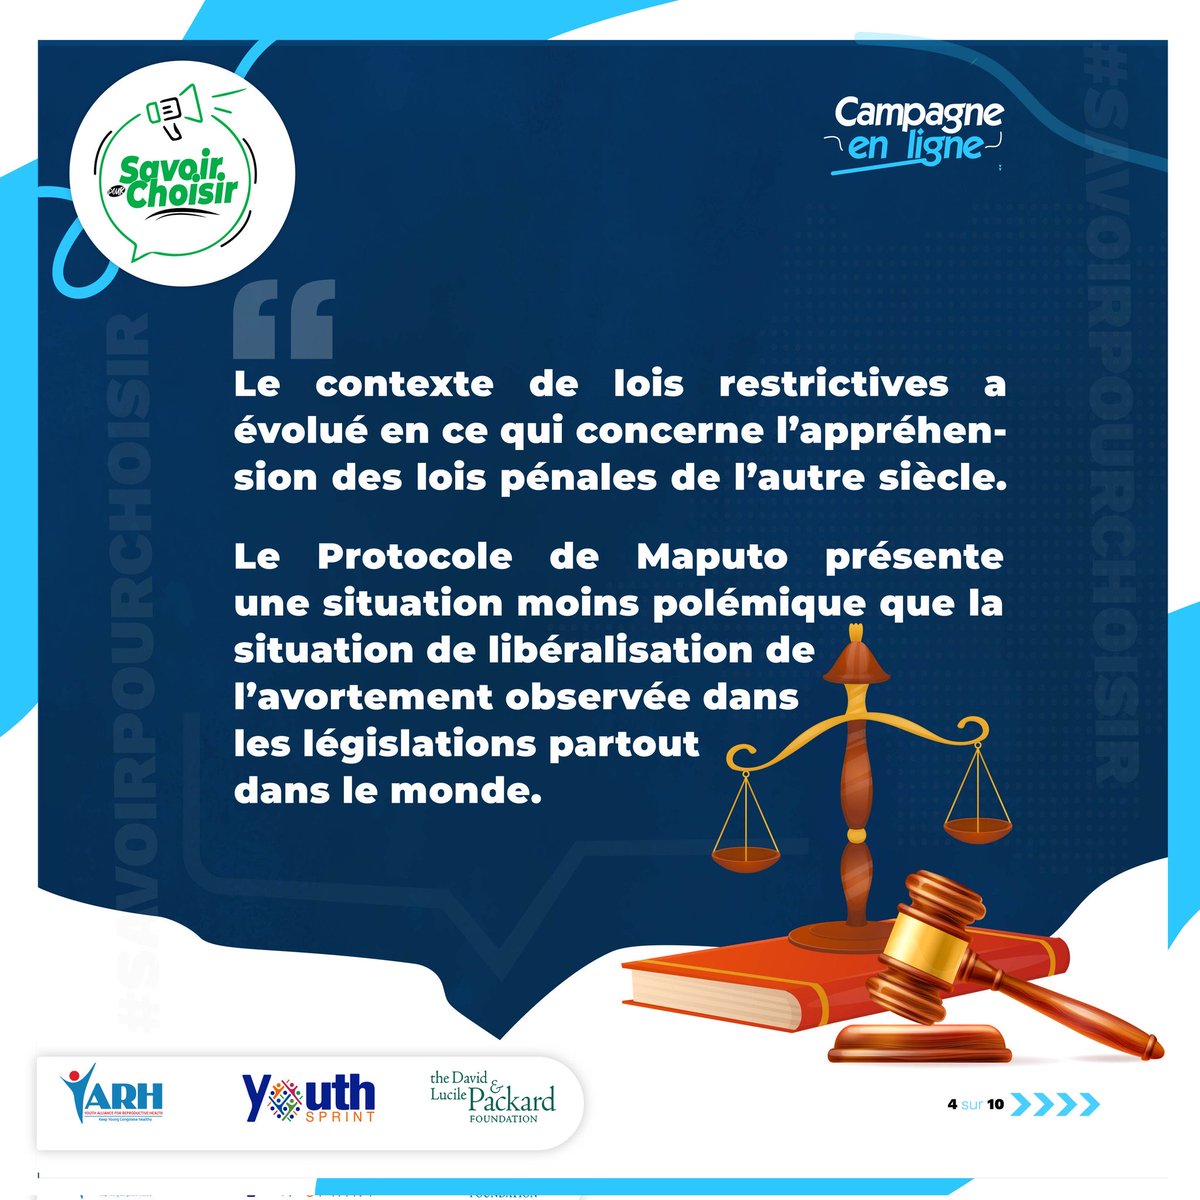 #SavoirPourChoisir: Le #ProtocoledeMaputo est le principal instrument juridique des droits des femmes et filles qui garantit de façon spécifique en son article 14, le droit à la santé et au contrôle des fonctions de reproduction. 1/2